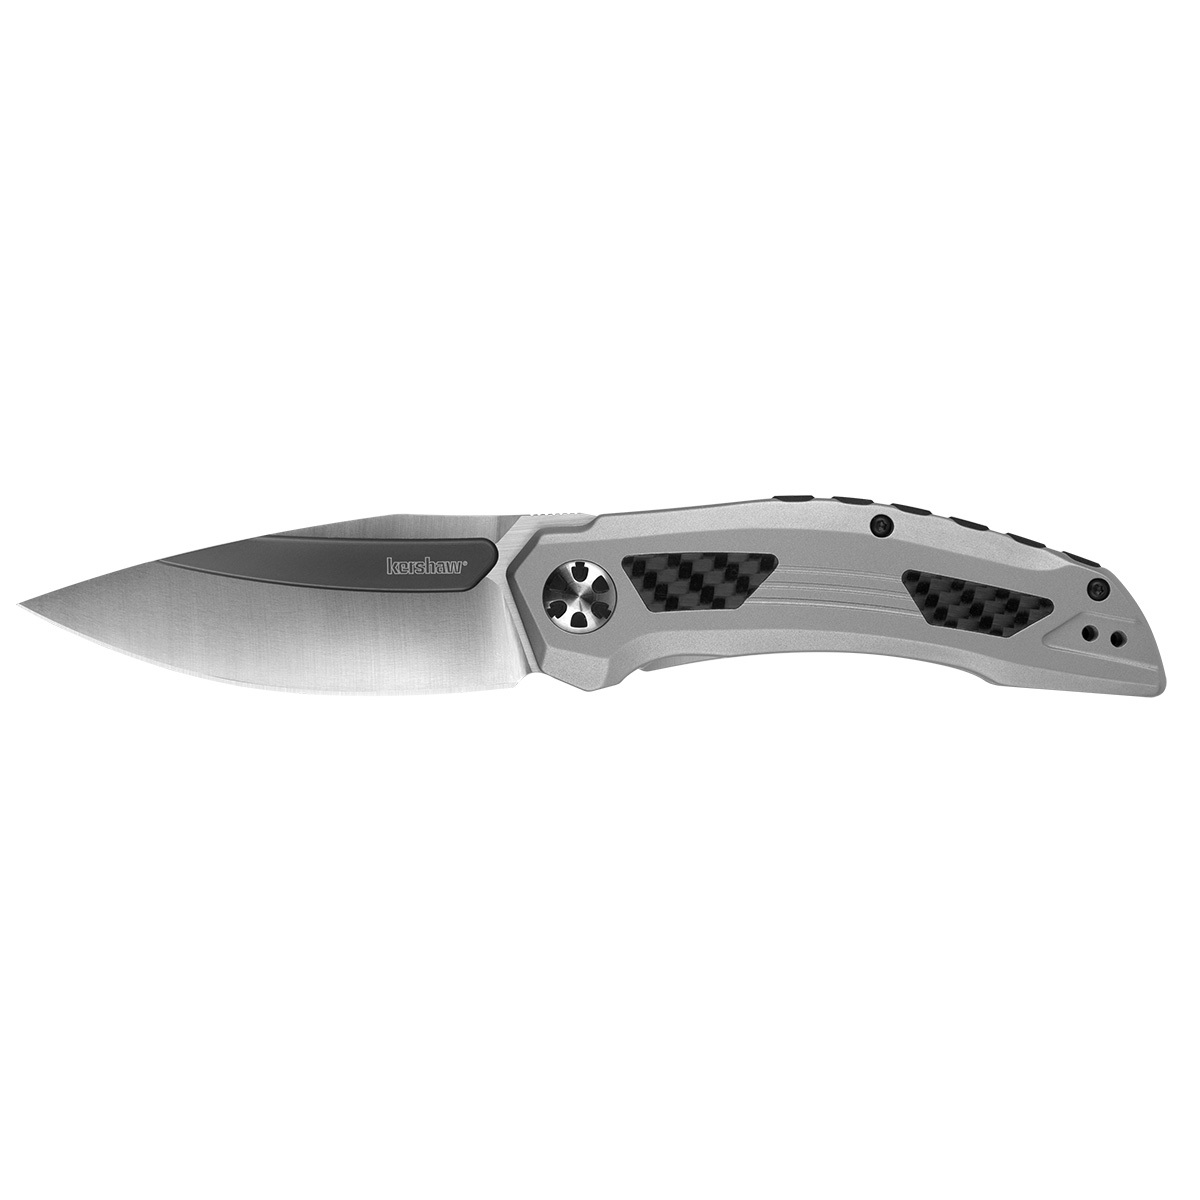 Складной нож Kershaw Norad K5510, сталь D2, рукоять сталь мангал складной grillux optimus stainless из нержавеющей стали